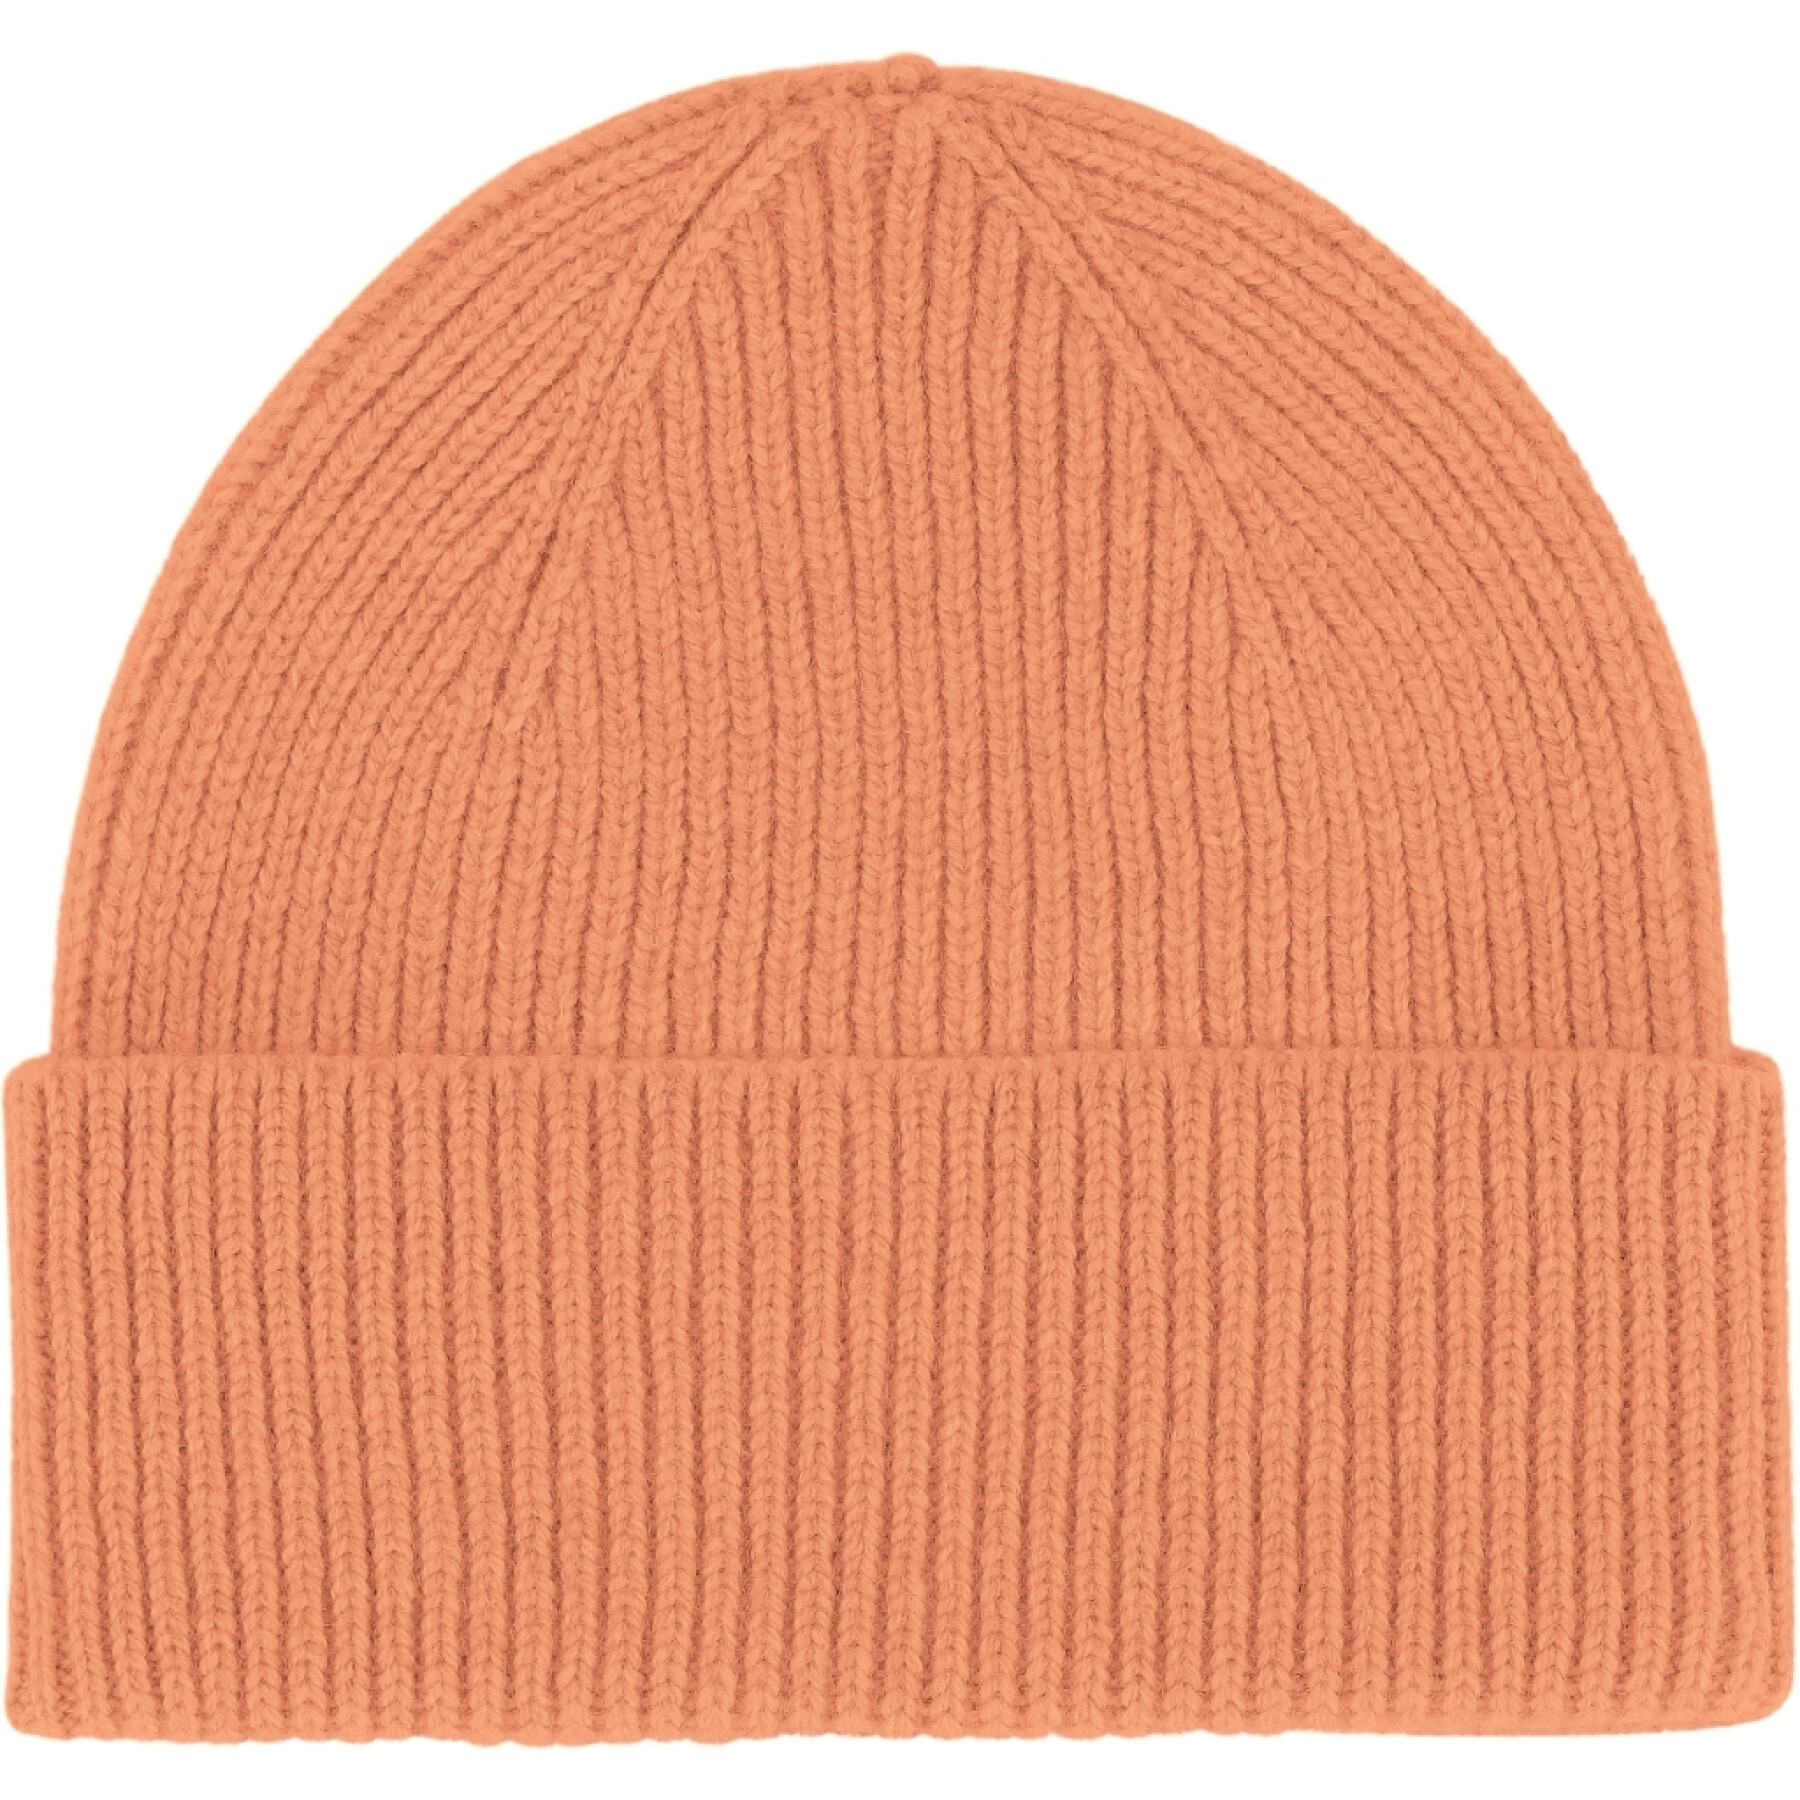 Sombrero de un solo pliegue Colorful Standard Sandstone Orange